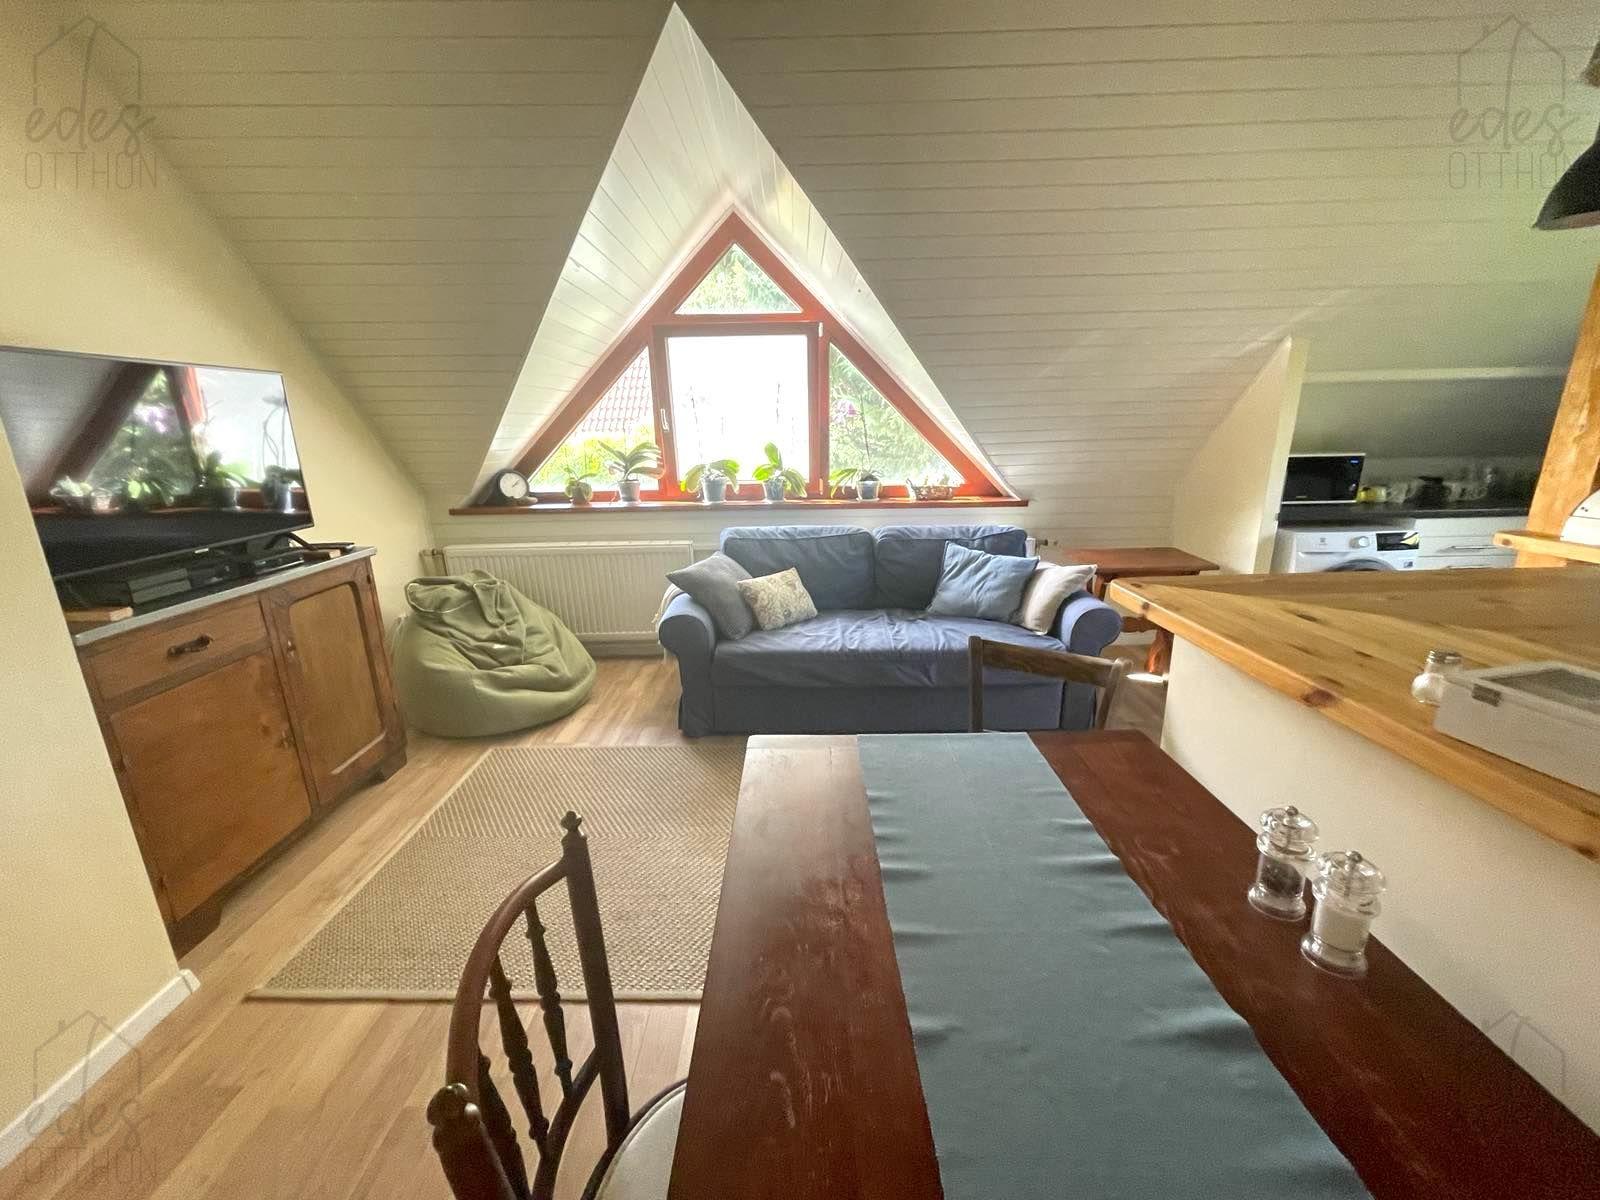 Nagykovácsiban bérbeadó tetőtéri igényes lakás egy kétlakásos házban